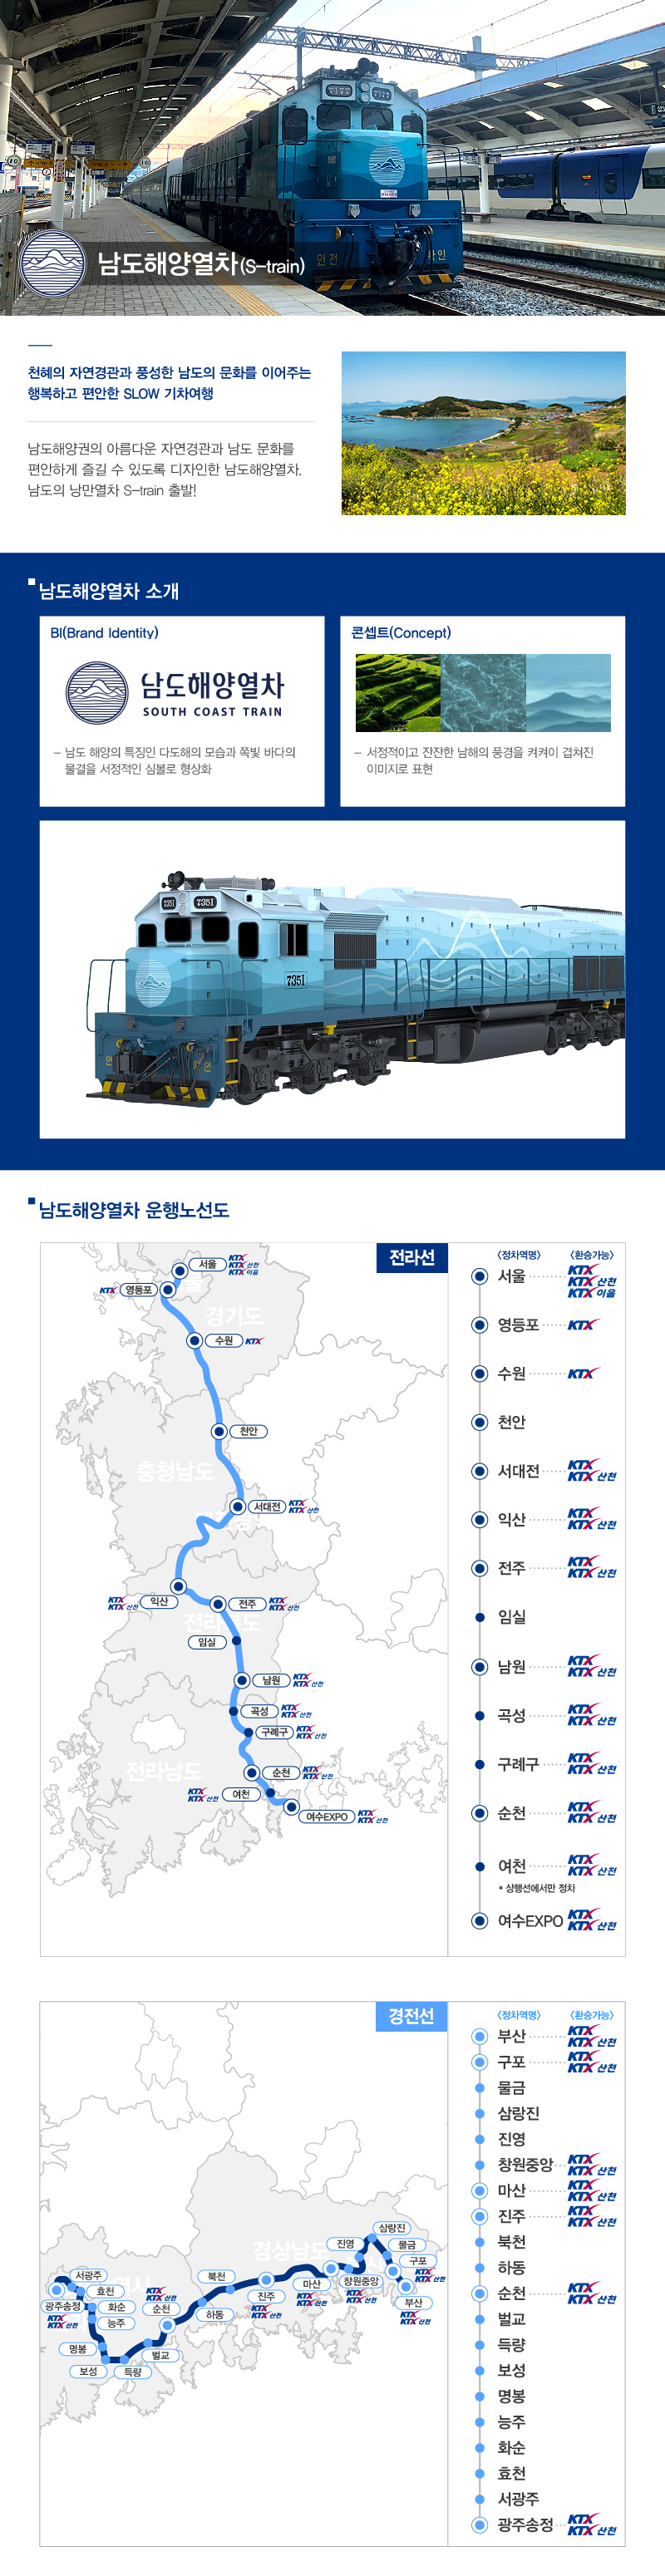 남도해양열차 열차소개